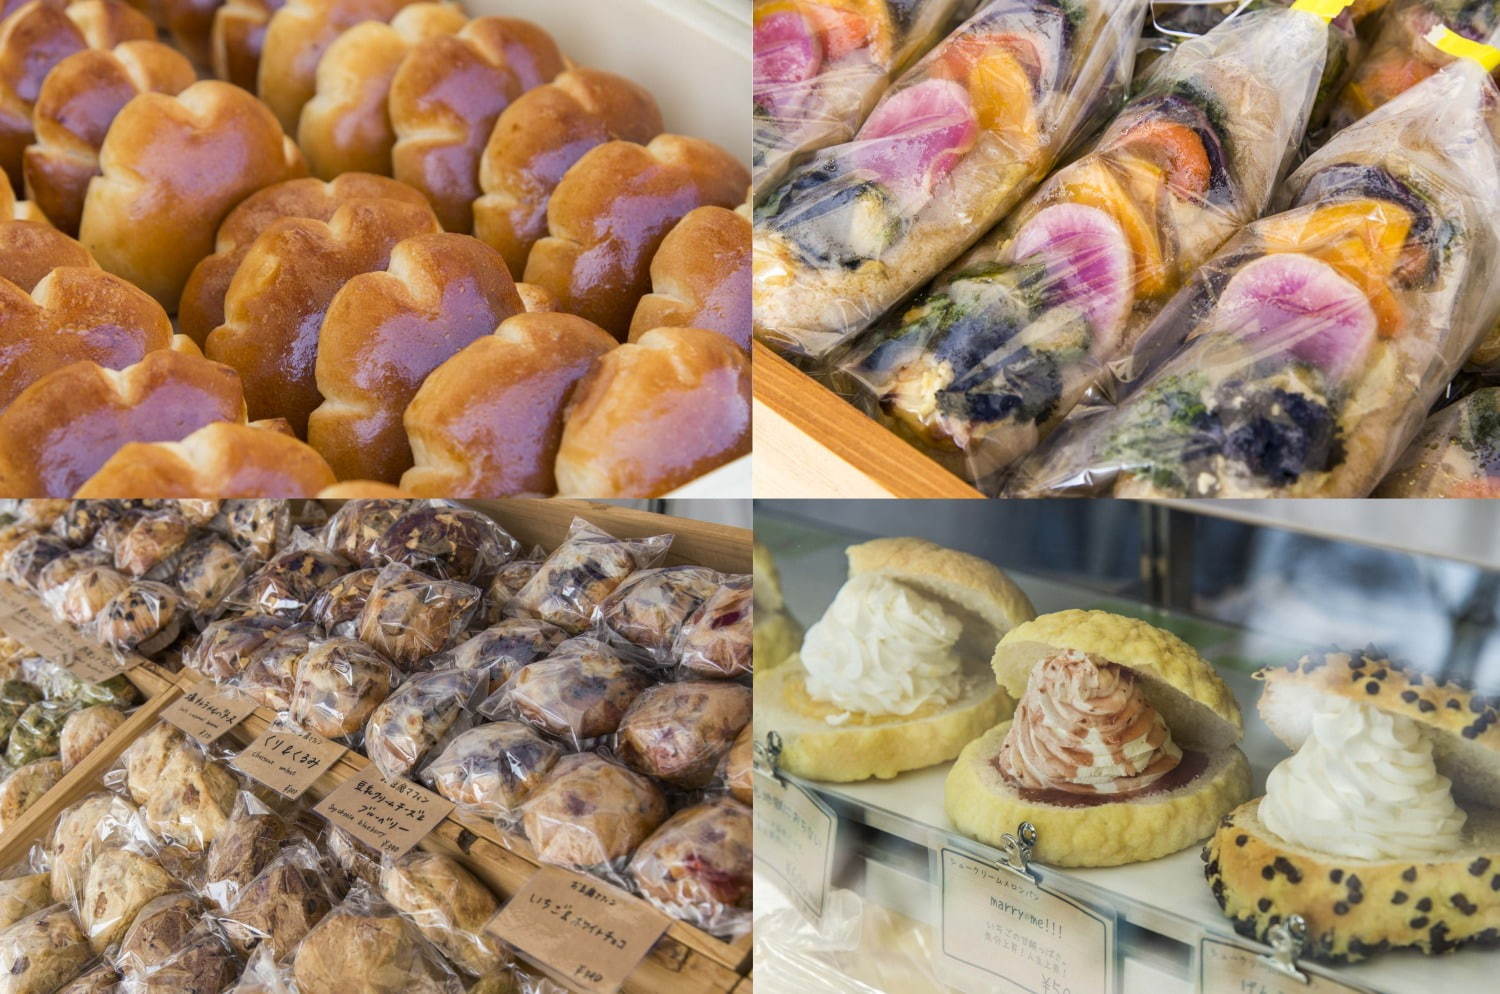 「パンのフェス」横浜赤レンガ倉庫で - 行列店や売り切れ必至の人気店などが全国から集結 | 写真